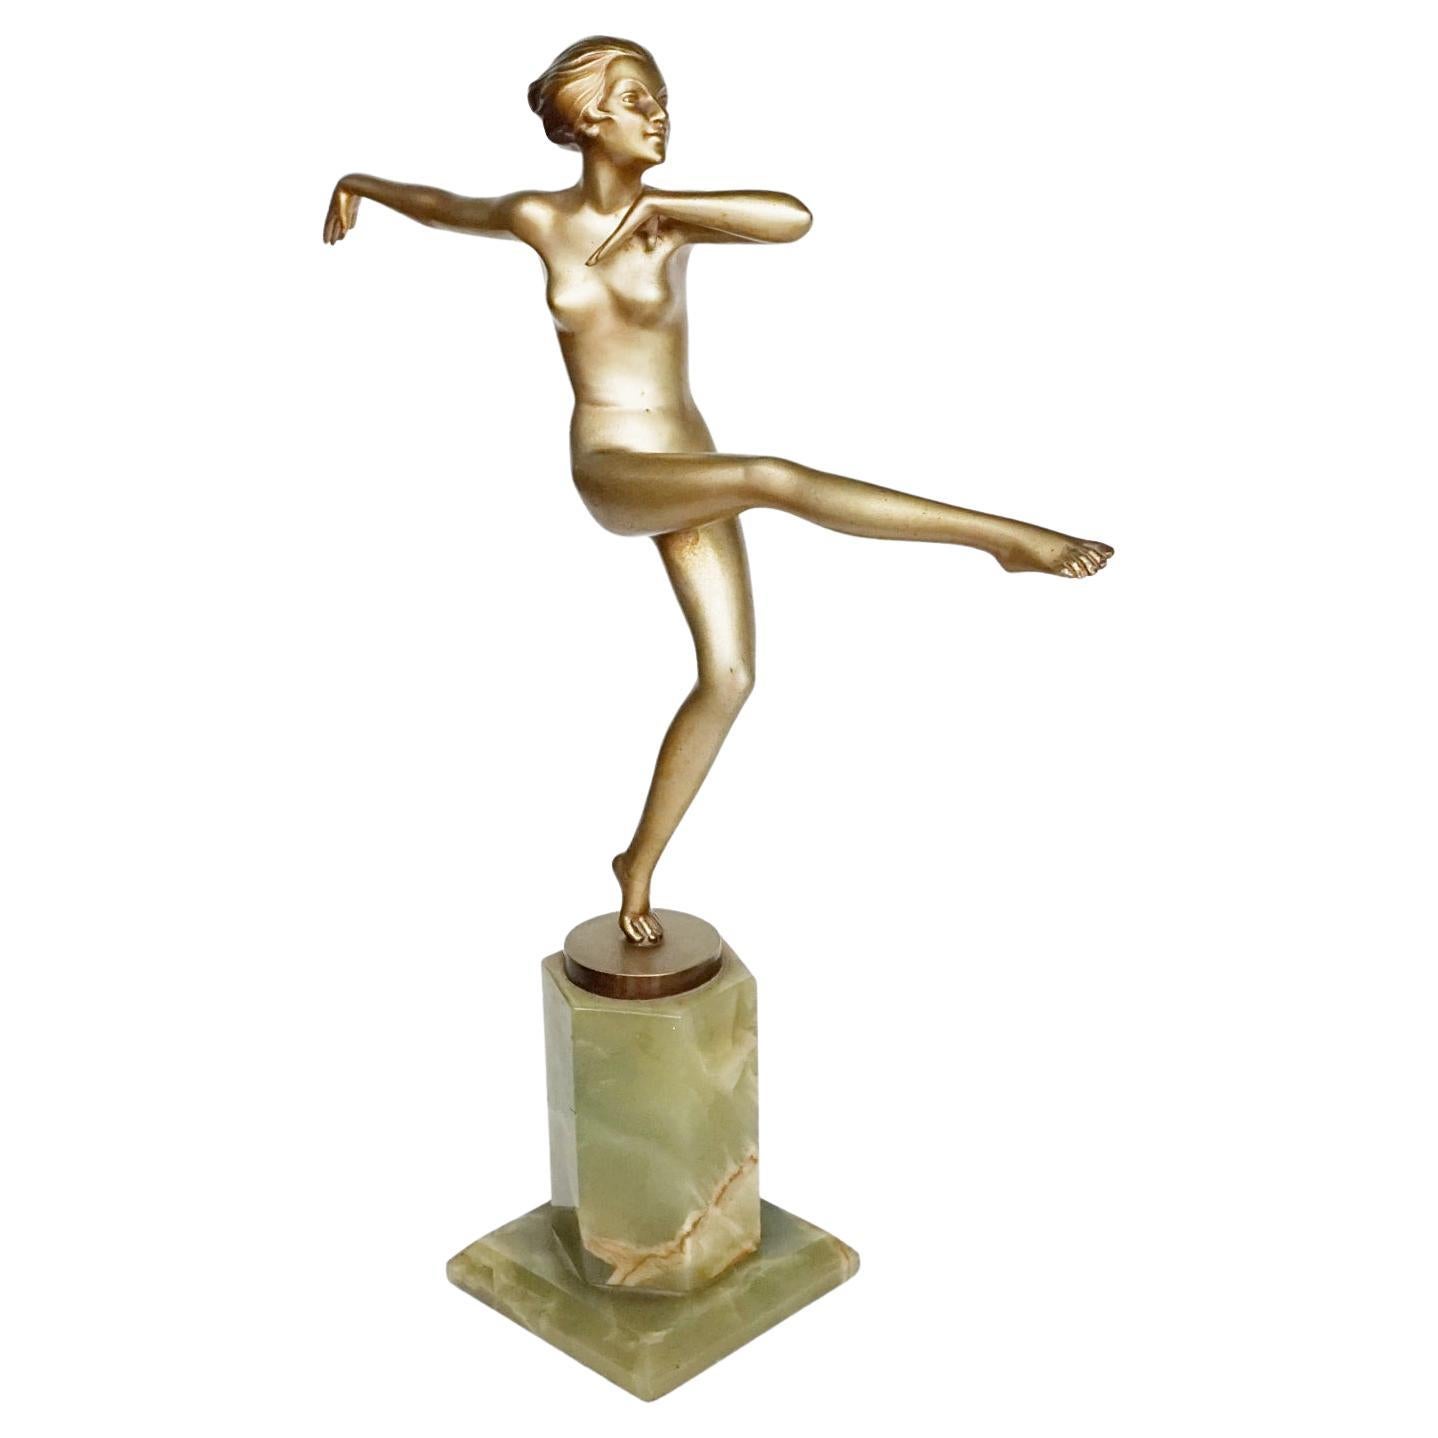 'High Kick' An Art Deco Cold Painted Bronze Sculpture by Josef Lorenzl